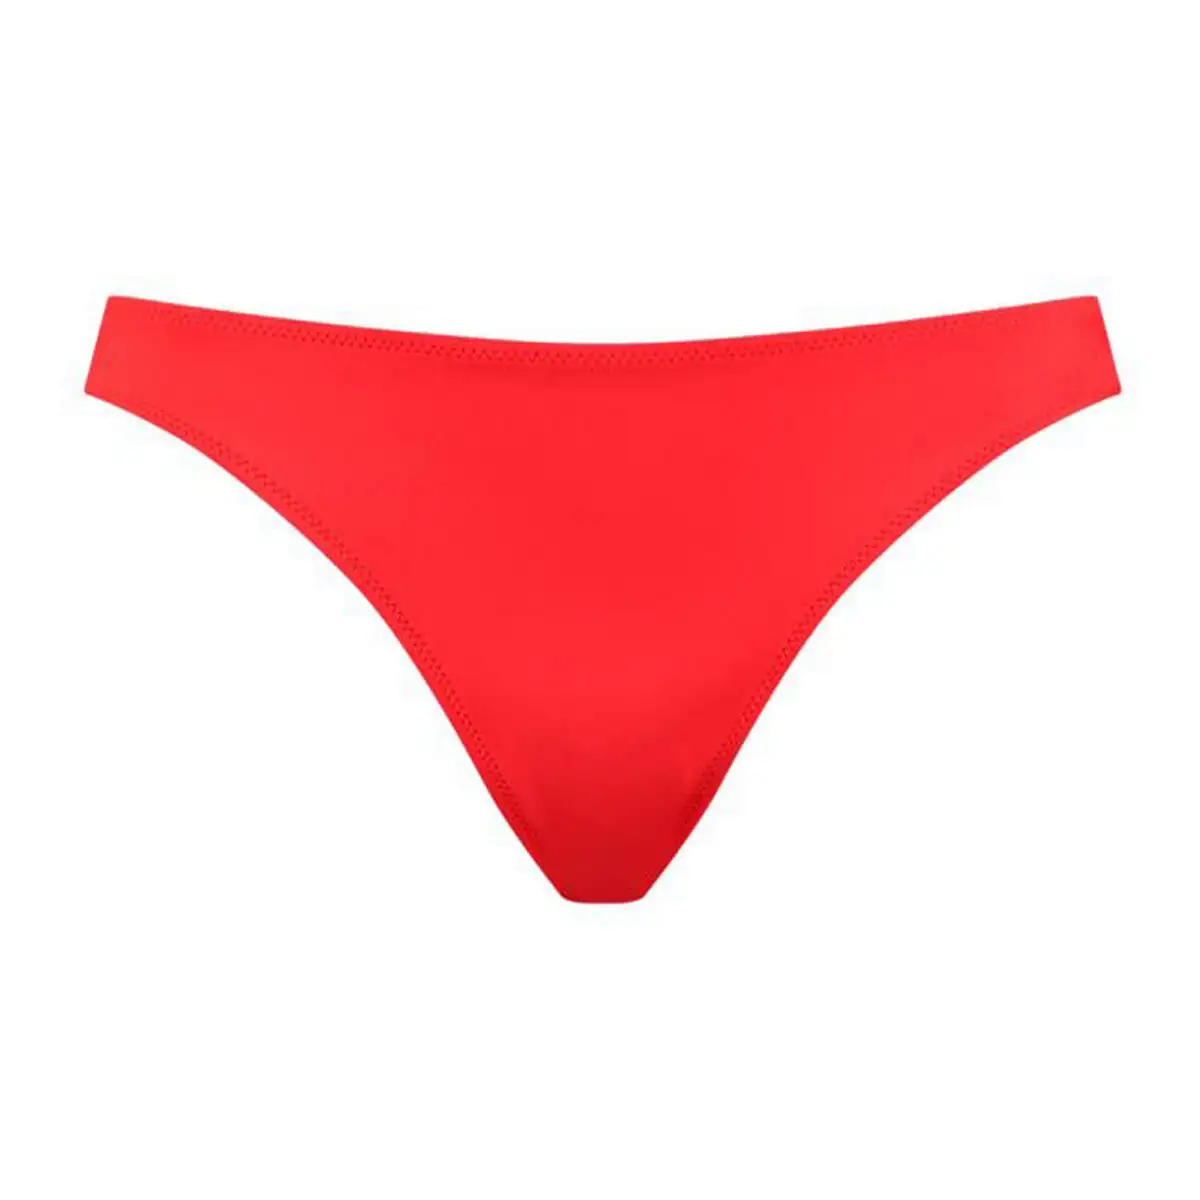 Maillot de bain femme puma swim classic salopette rouge_8170. DIAYTAR SENEGAL - Où Choisir Devient une Découverte. Explorez notre boutique en ligne et trouvez des articles qui vous surprennent et vous ravissent à chaque clic.